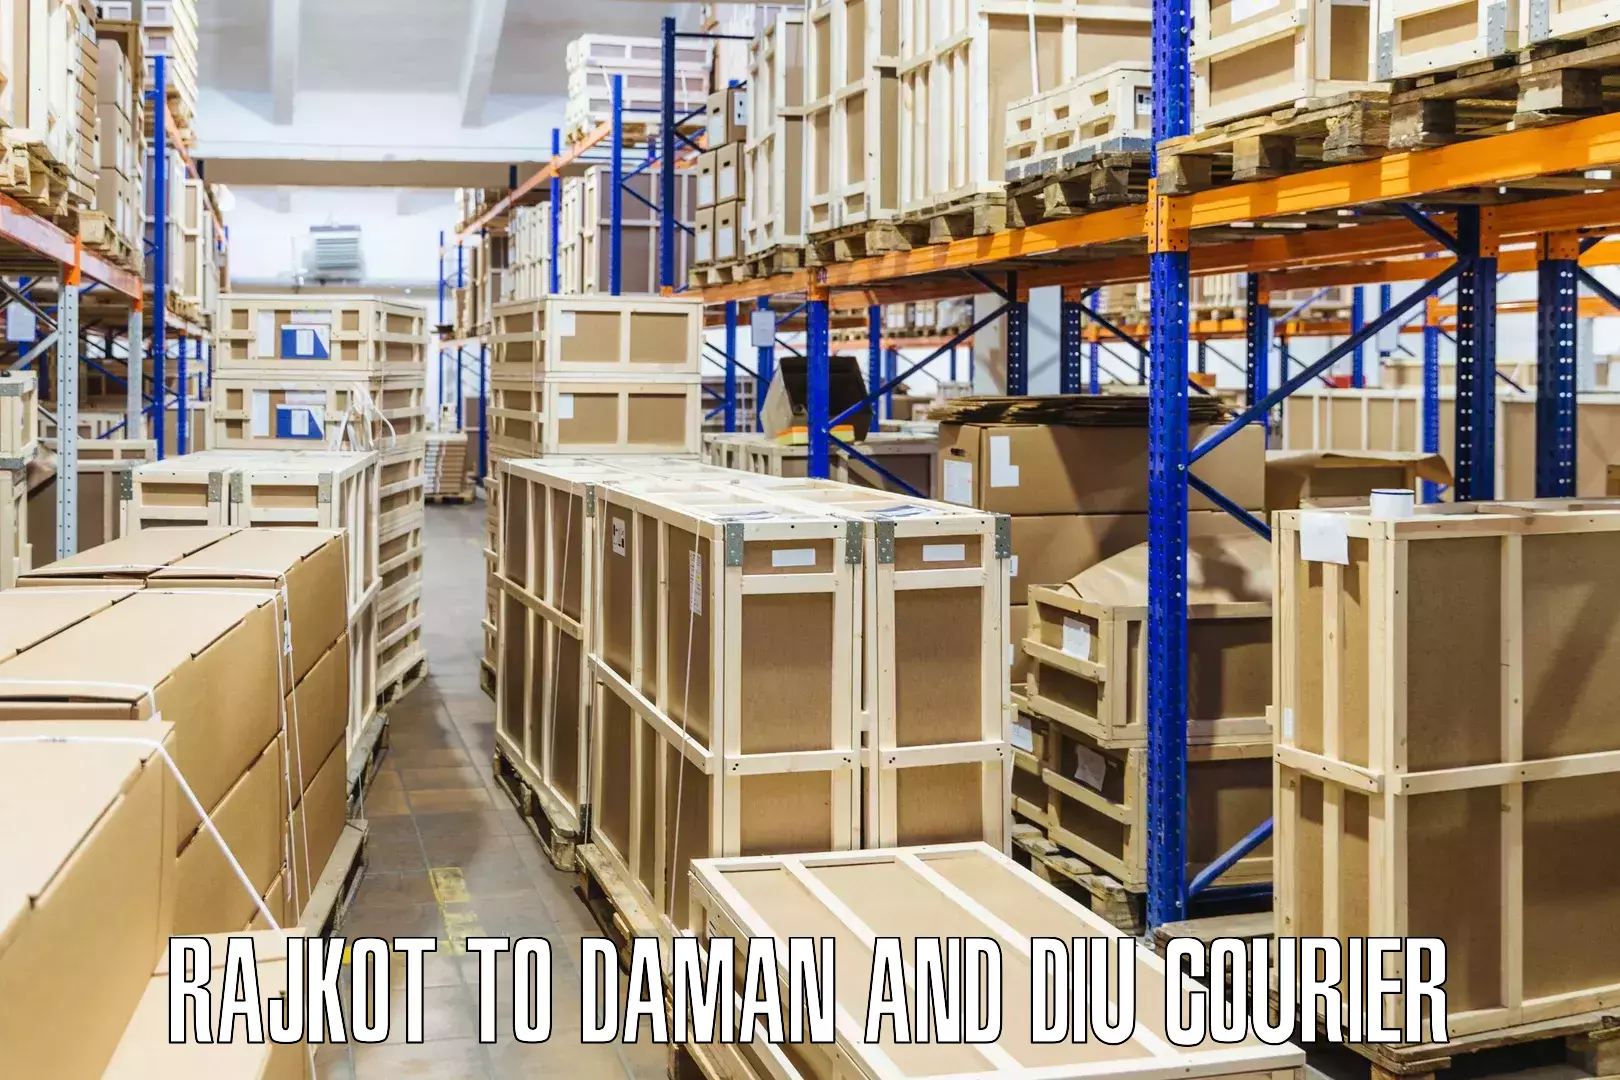 Affordable shipping rates Rajkot to Daman and Diu